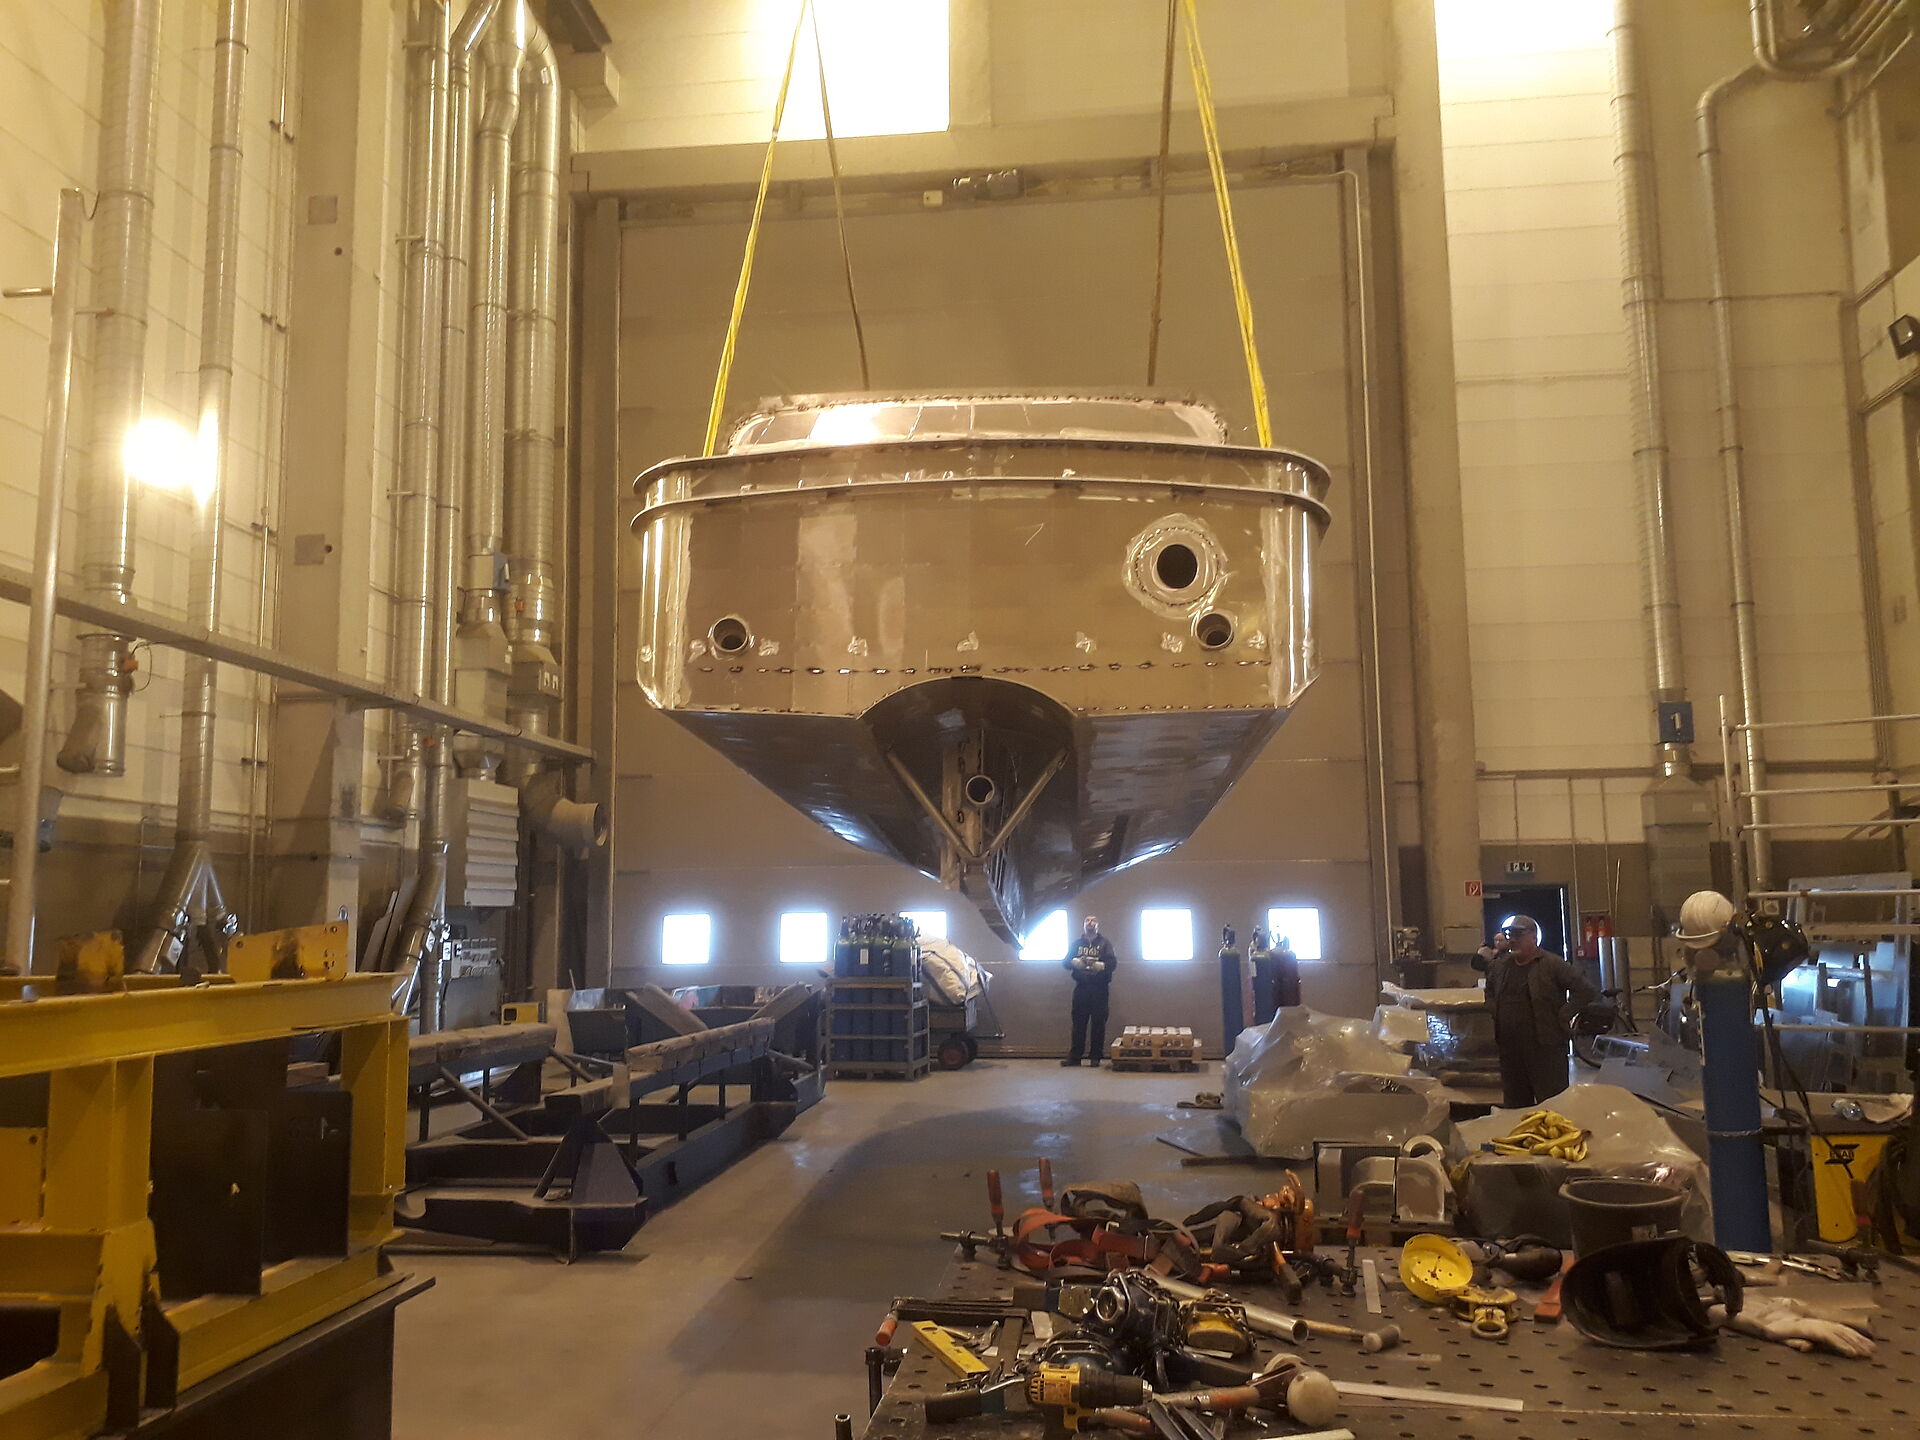 Der Rohbau aus Aluminium eines Seenotrettungsbootes wird in einer Werfthalle von einem Hallenkran gehoben. Ansicht von hinten, während das Boot einige Meter über dem Hallenboden schwebt.